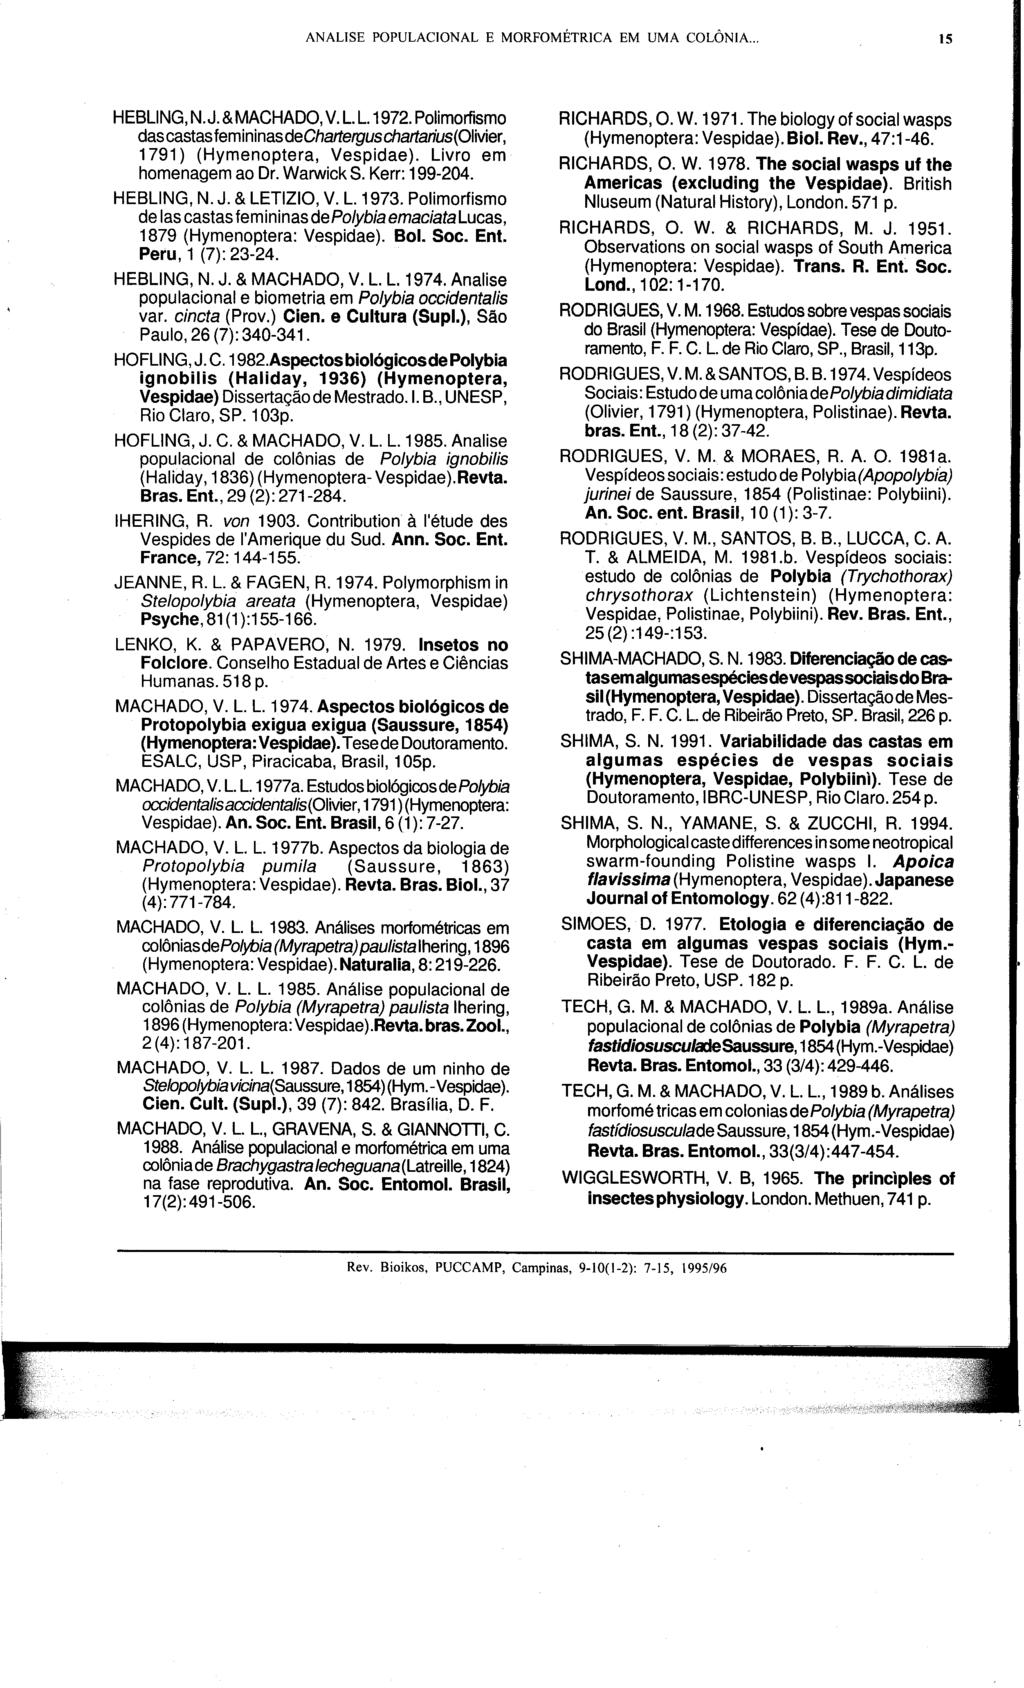 ANALISE POPULACIONAL E MORFOMÉTRICA EM UMA COLÔNIA... IS HEBLlNG N. J. & MACHADO V.L.L.1972. Polimorfismo das castas femininas dechartergus chartarius(olivier 1791) (Hymenoptera Vespidae).